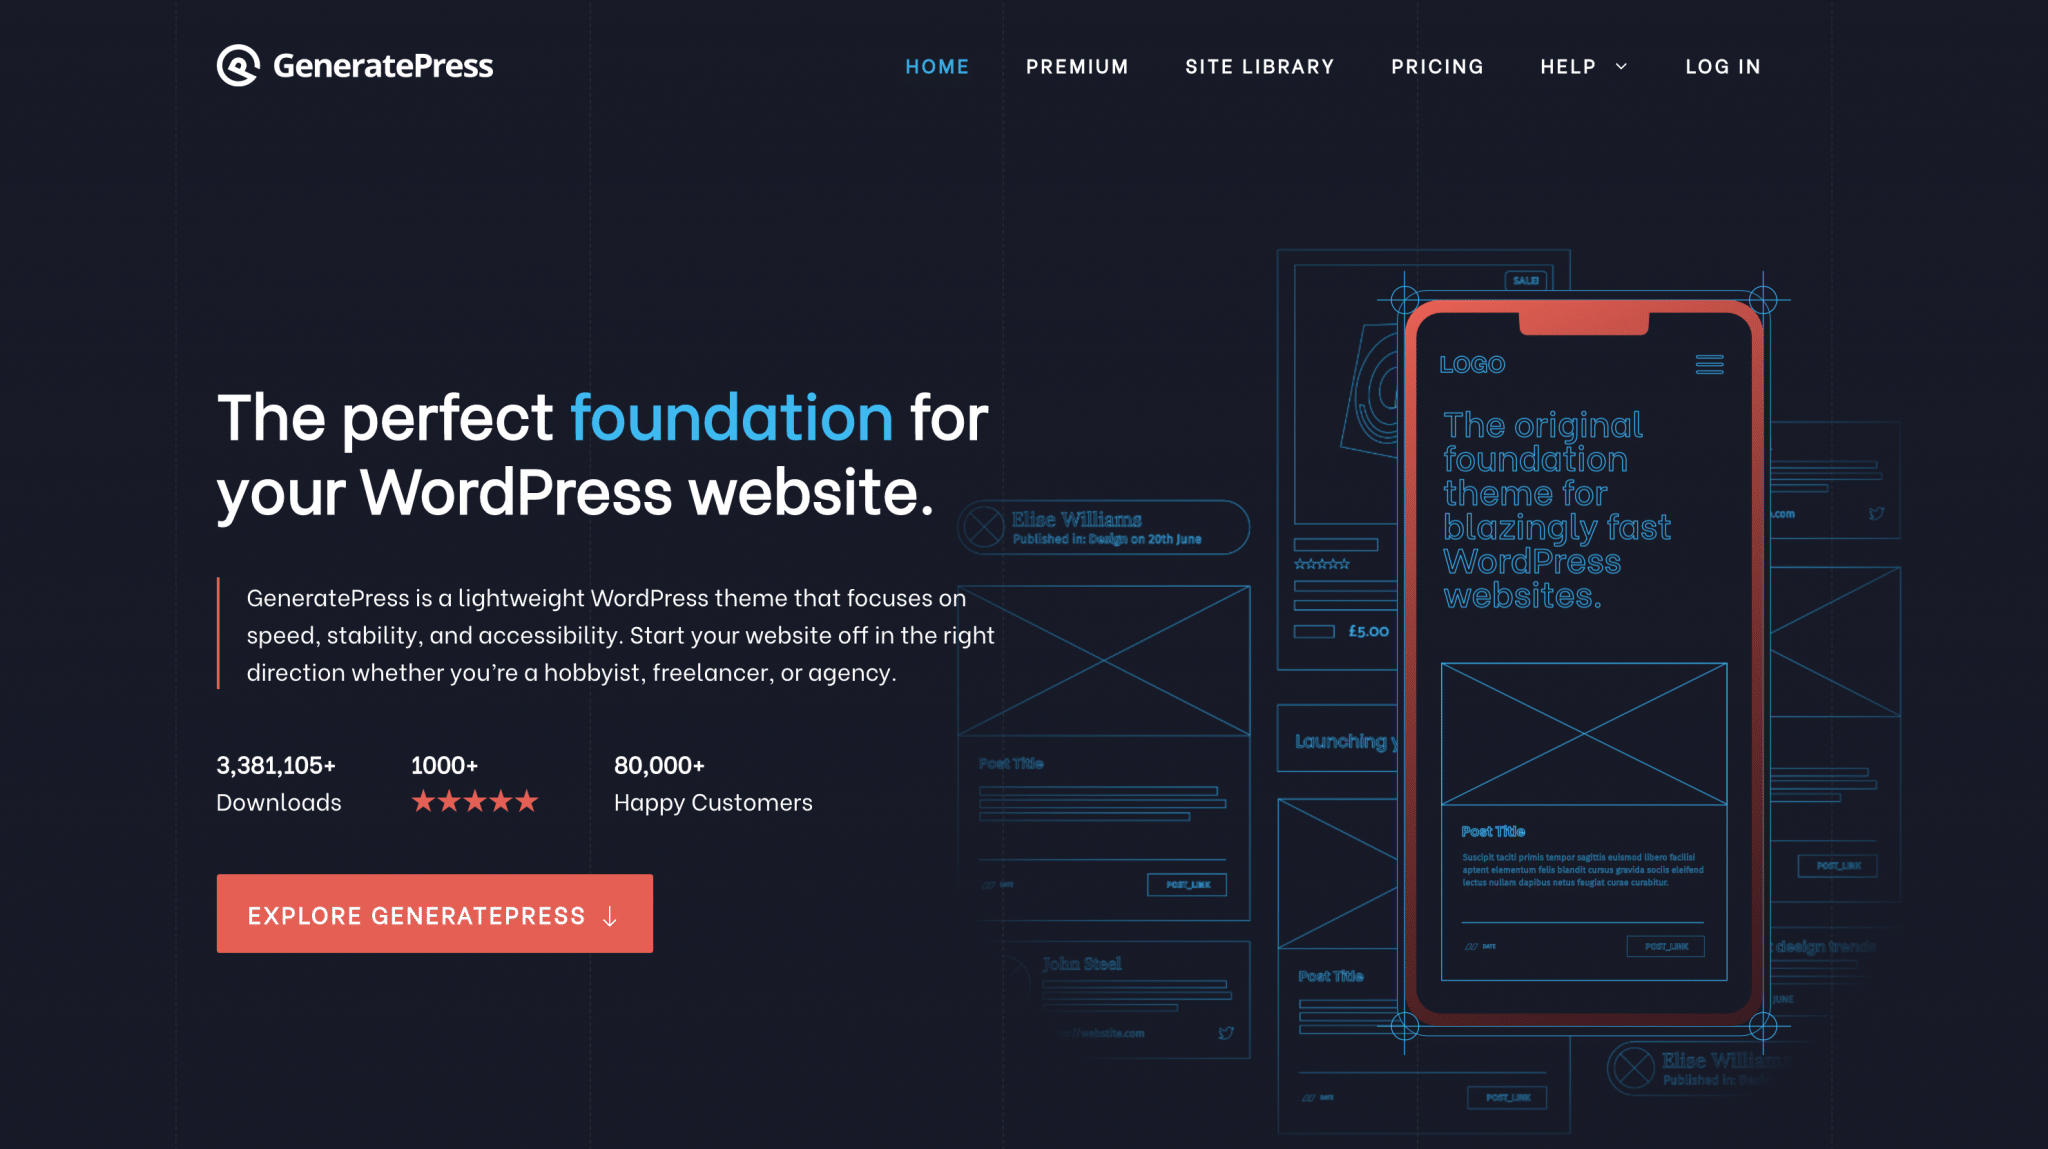 GeneratePress theme homepage.